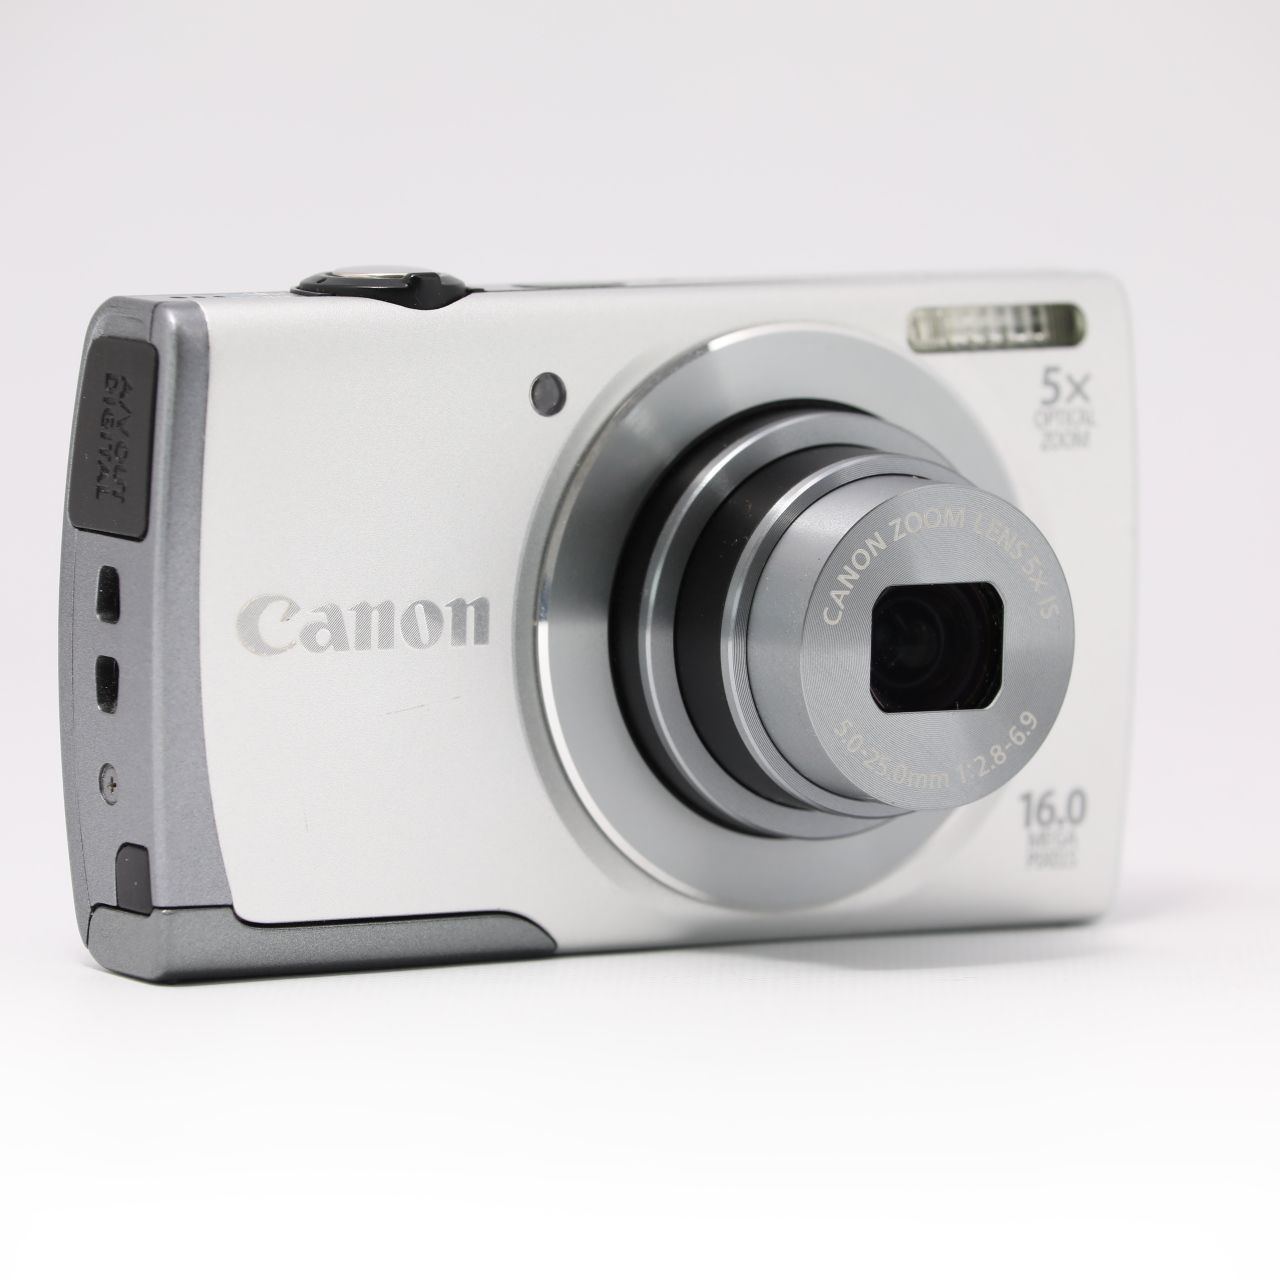 Canon デジタルカメラ PowerShot A3500 IS(パープル) 広角28mm 光学5倍